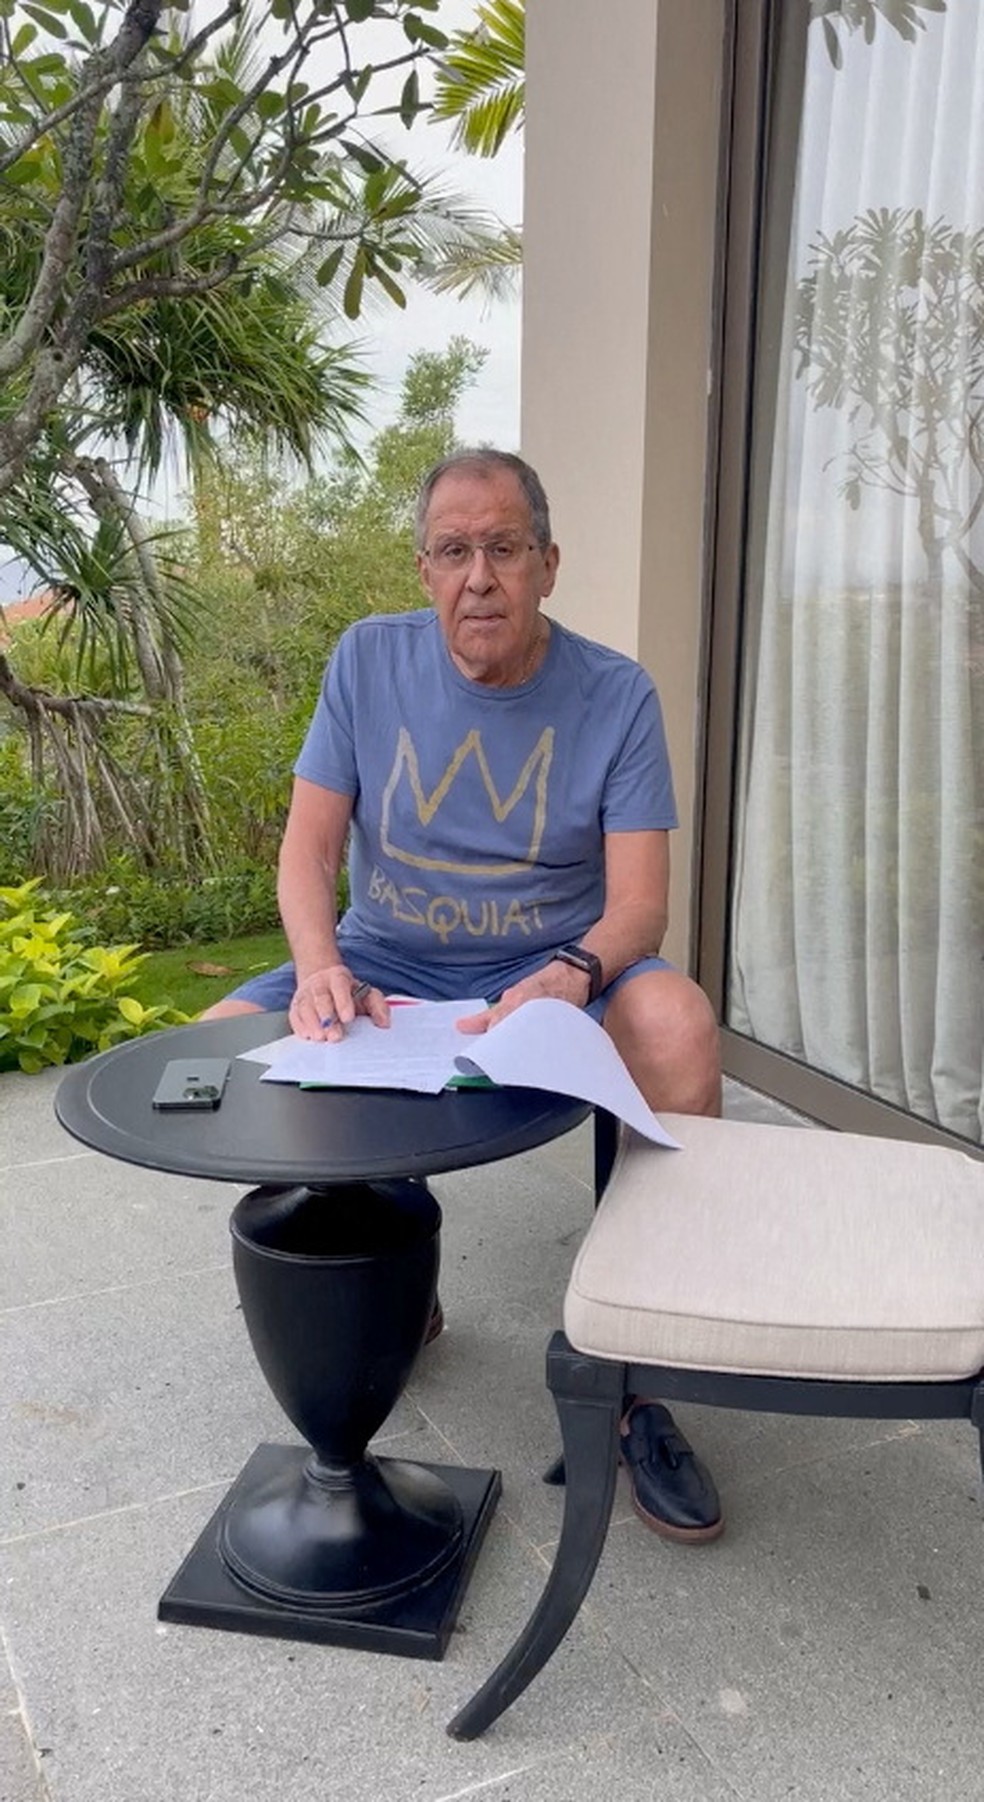 Lavrov aparece sentado na varanda de hotel em Bali lendo documentos — Foto: Maria Zakharova via Telegram/Reprodução via REUTERS